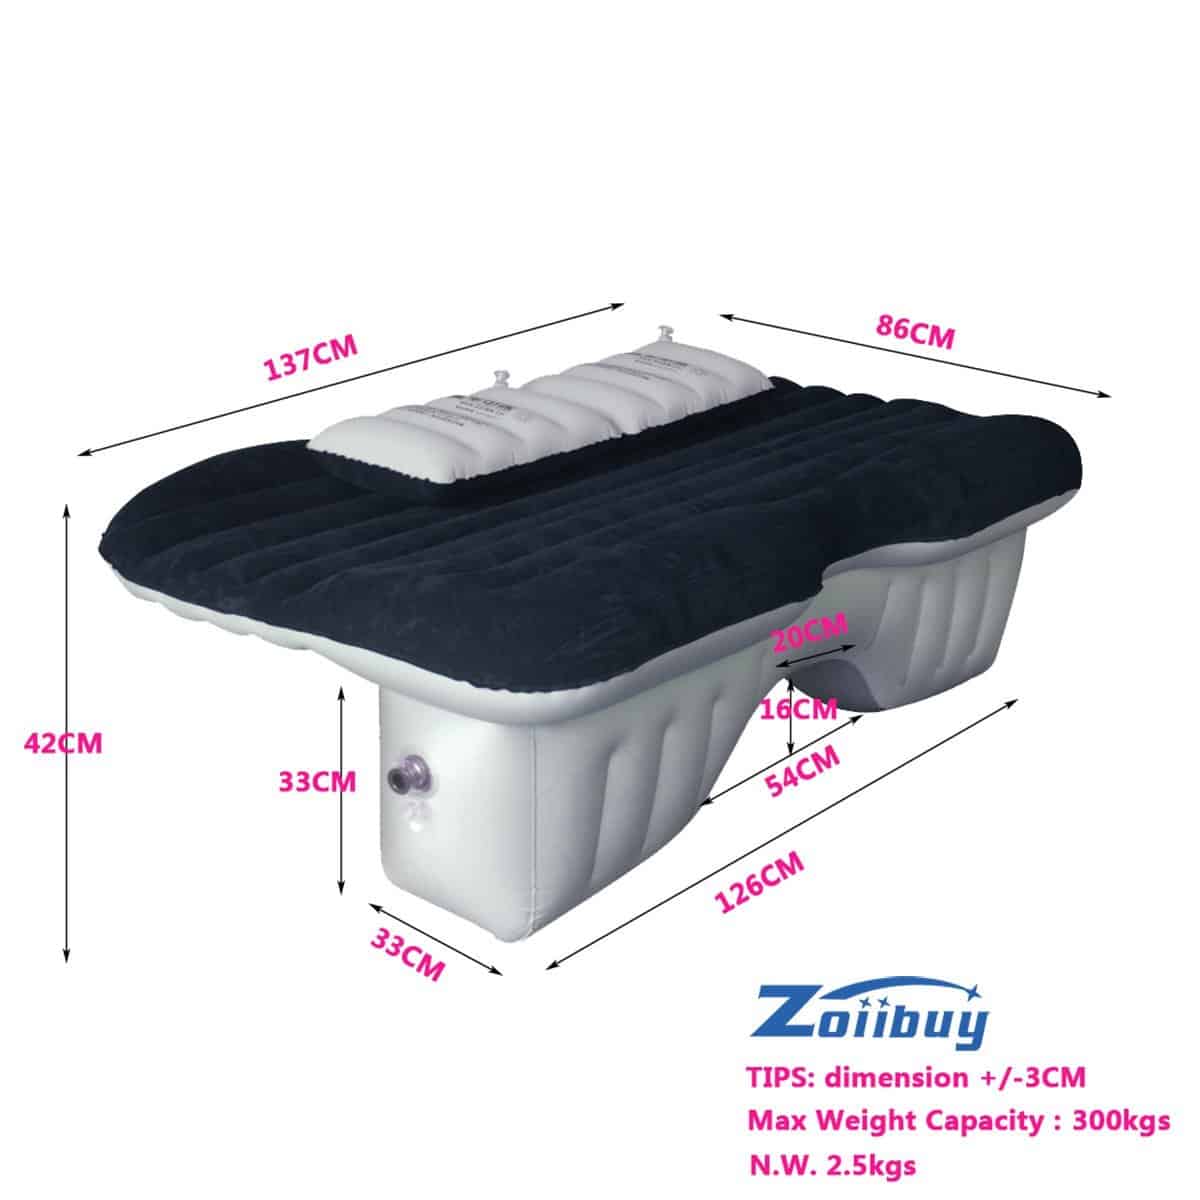 Luftmatratze für die Rücksitzbank von Zoiibuy®